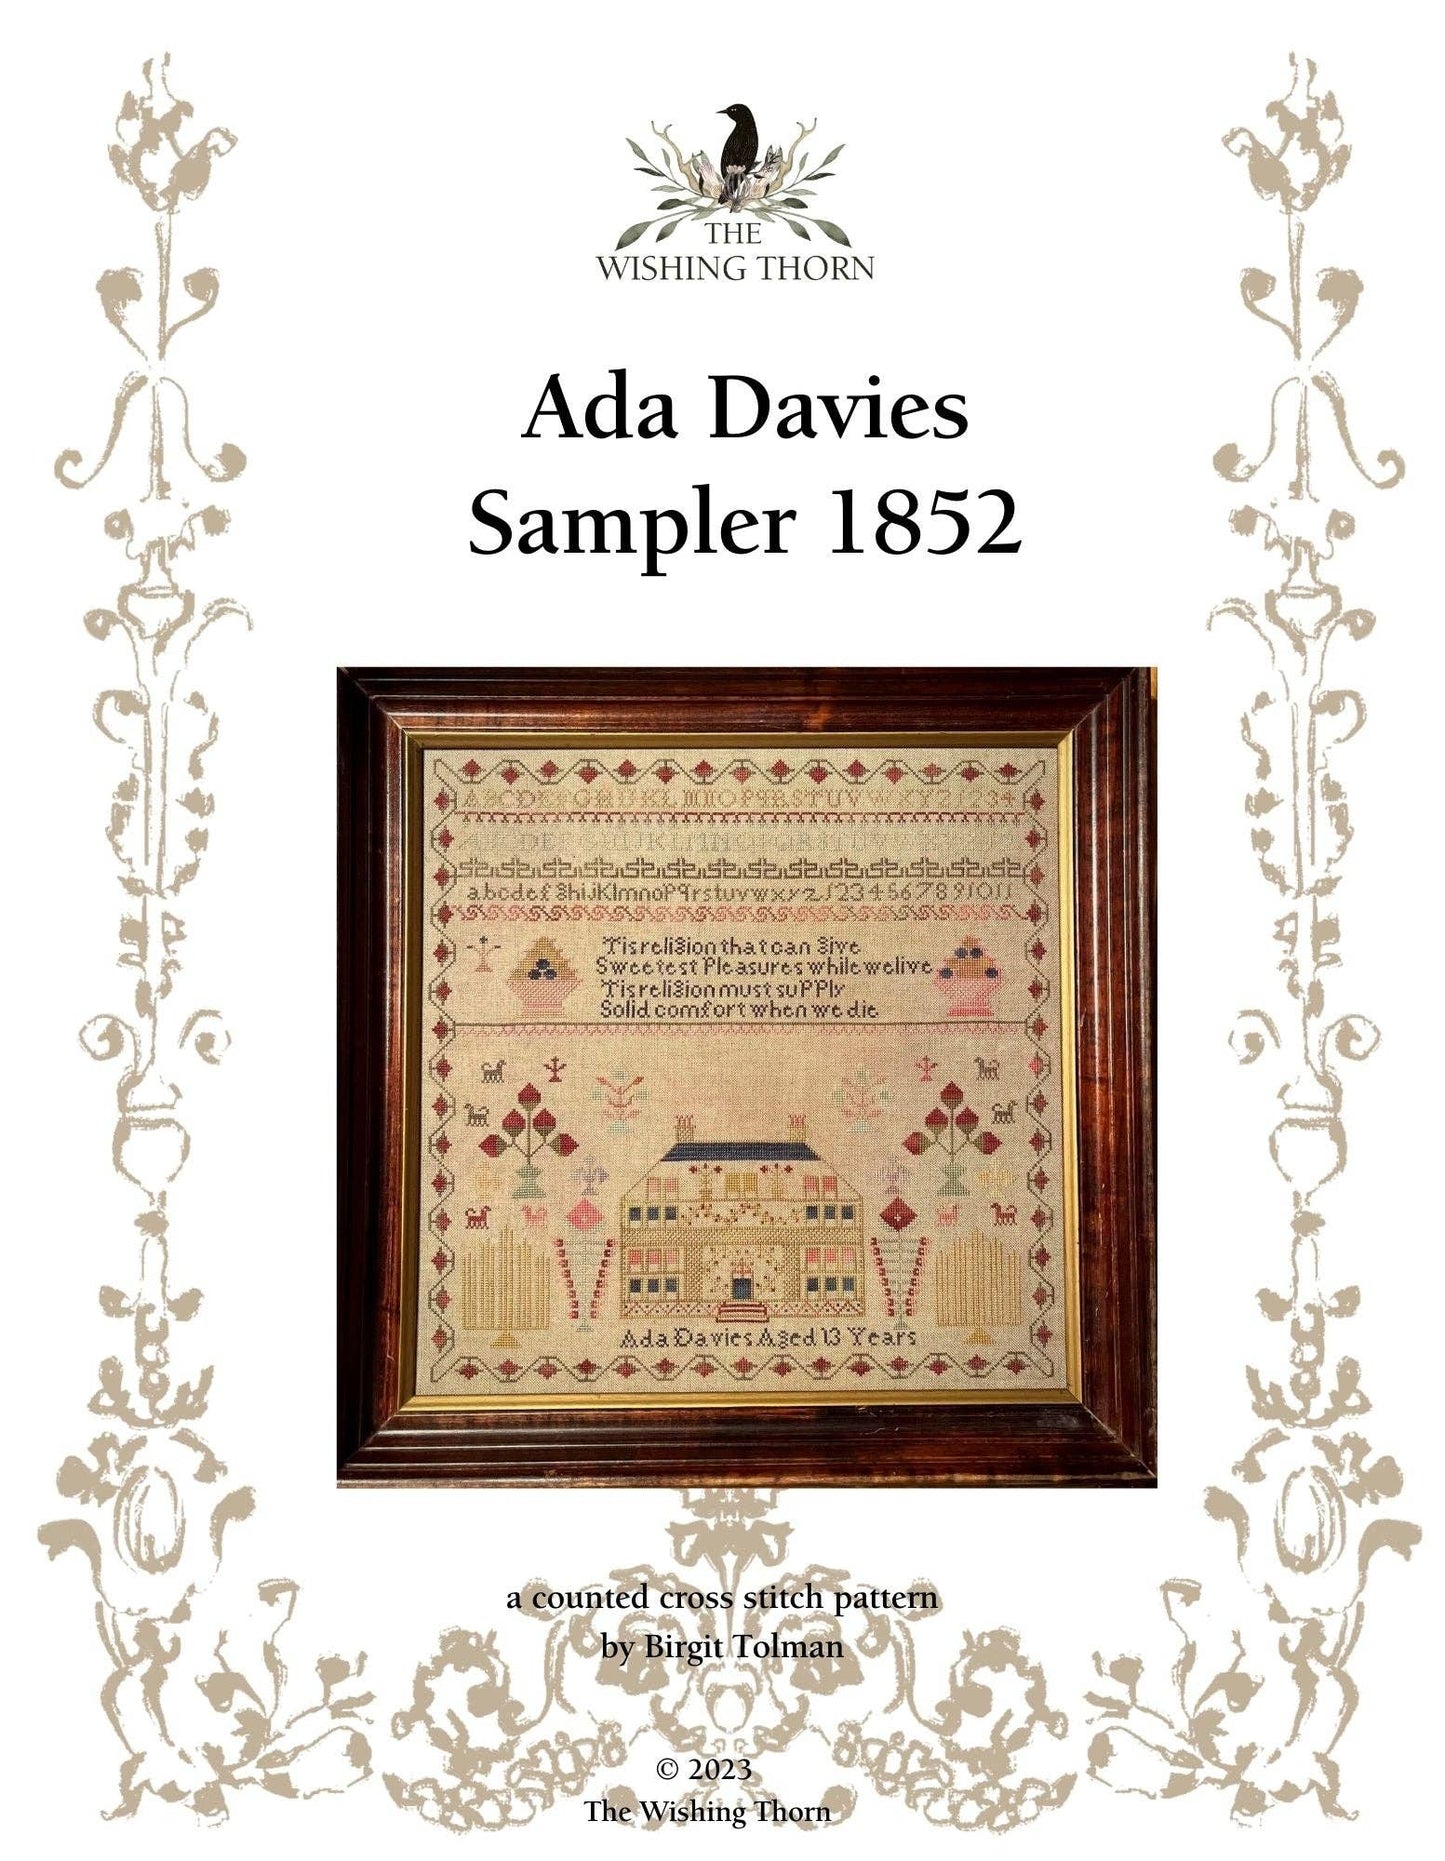 Ada Davies 1852 Sampler Paper Chart | The Wishing Thorn